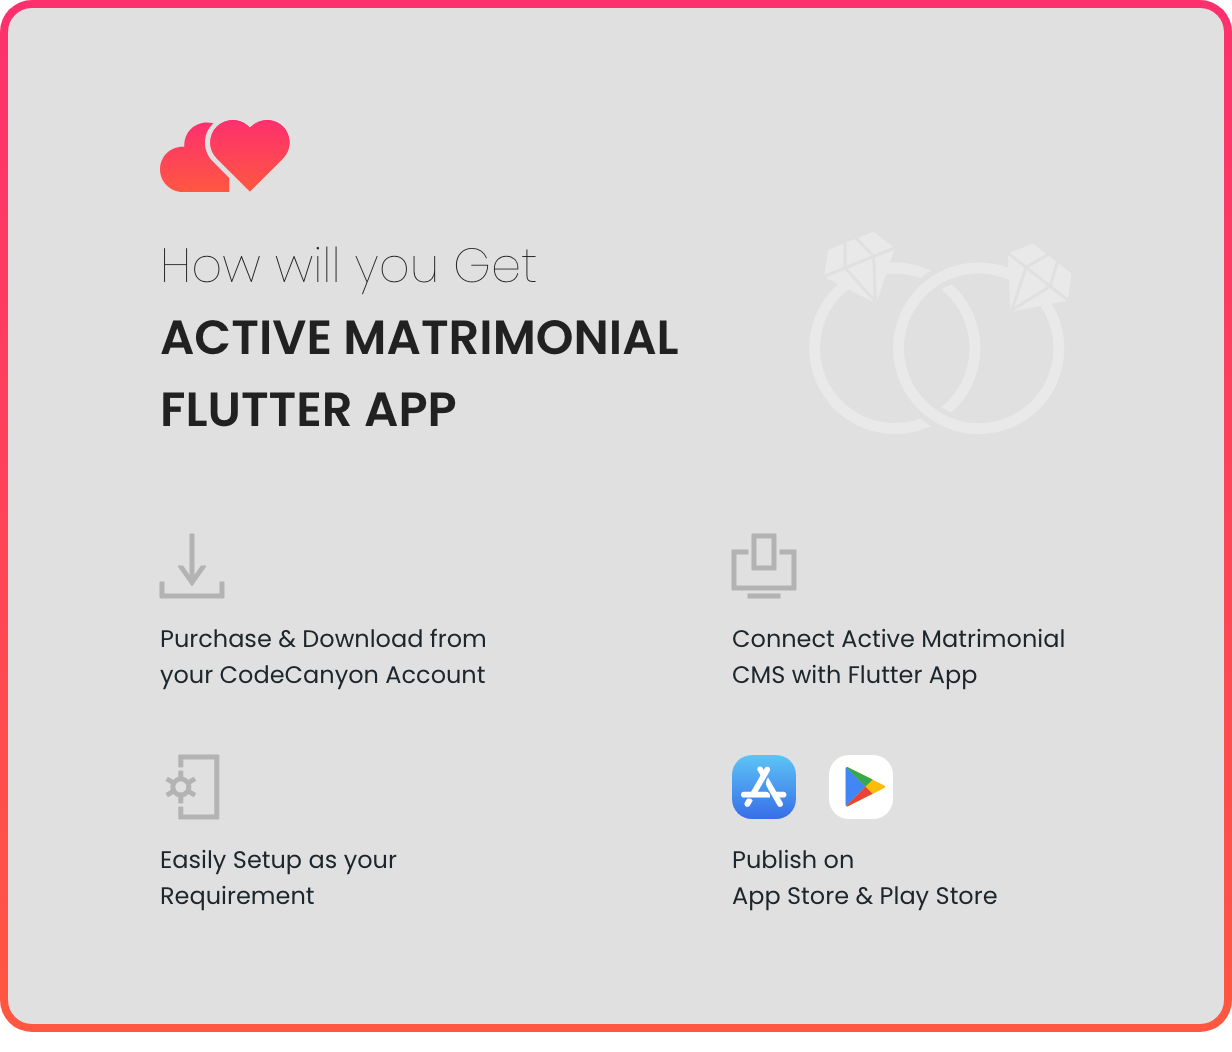 Active Matrimonial Flutter App - 5